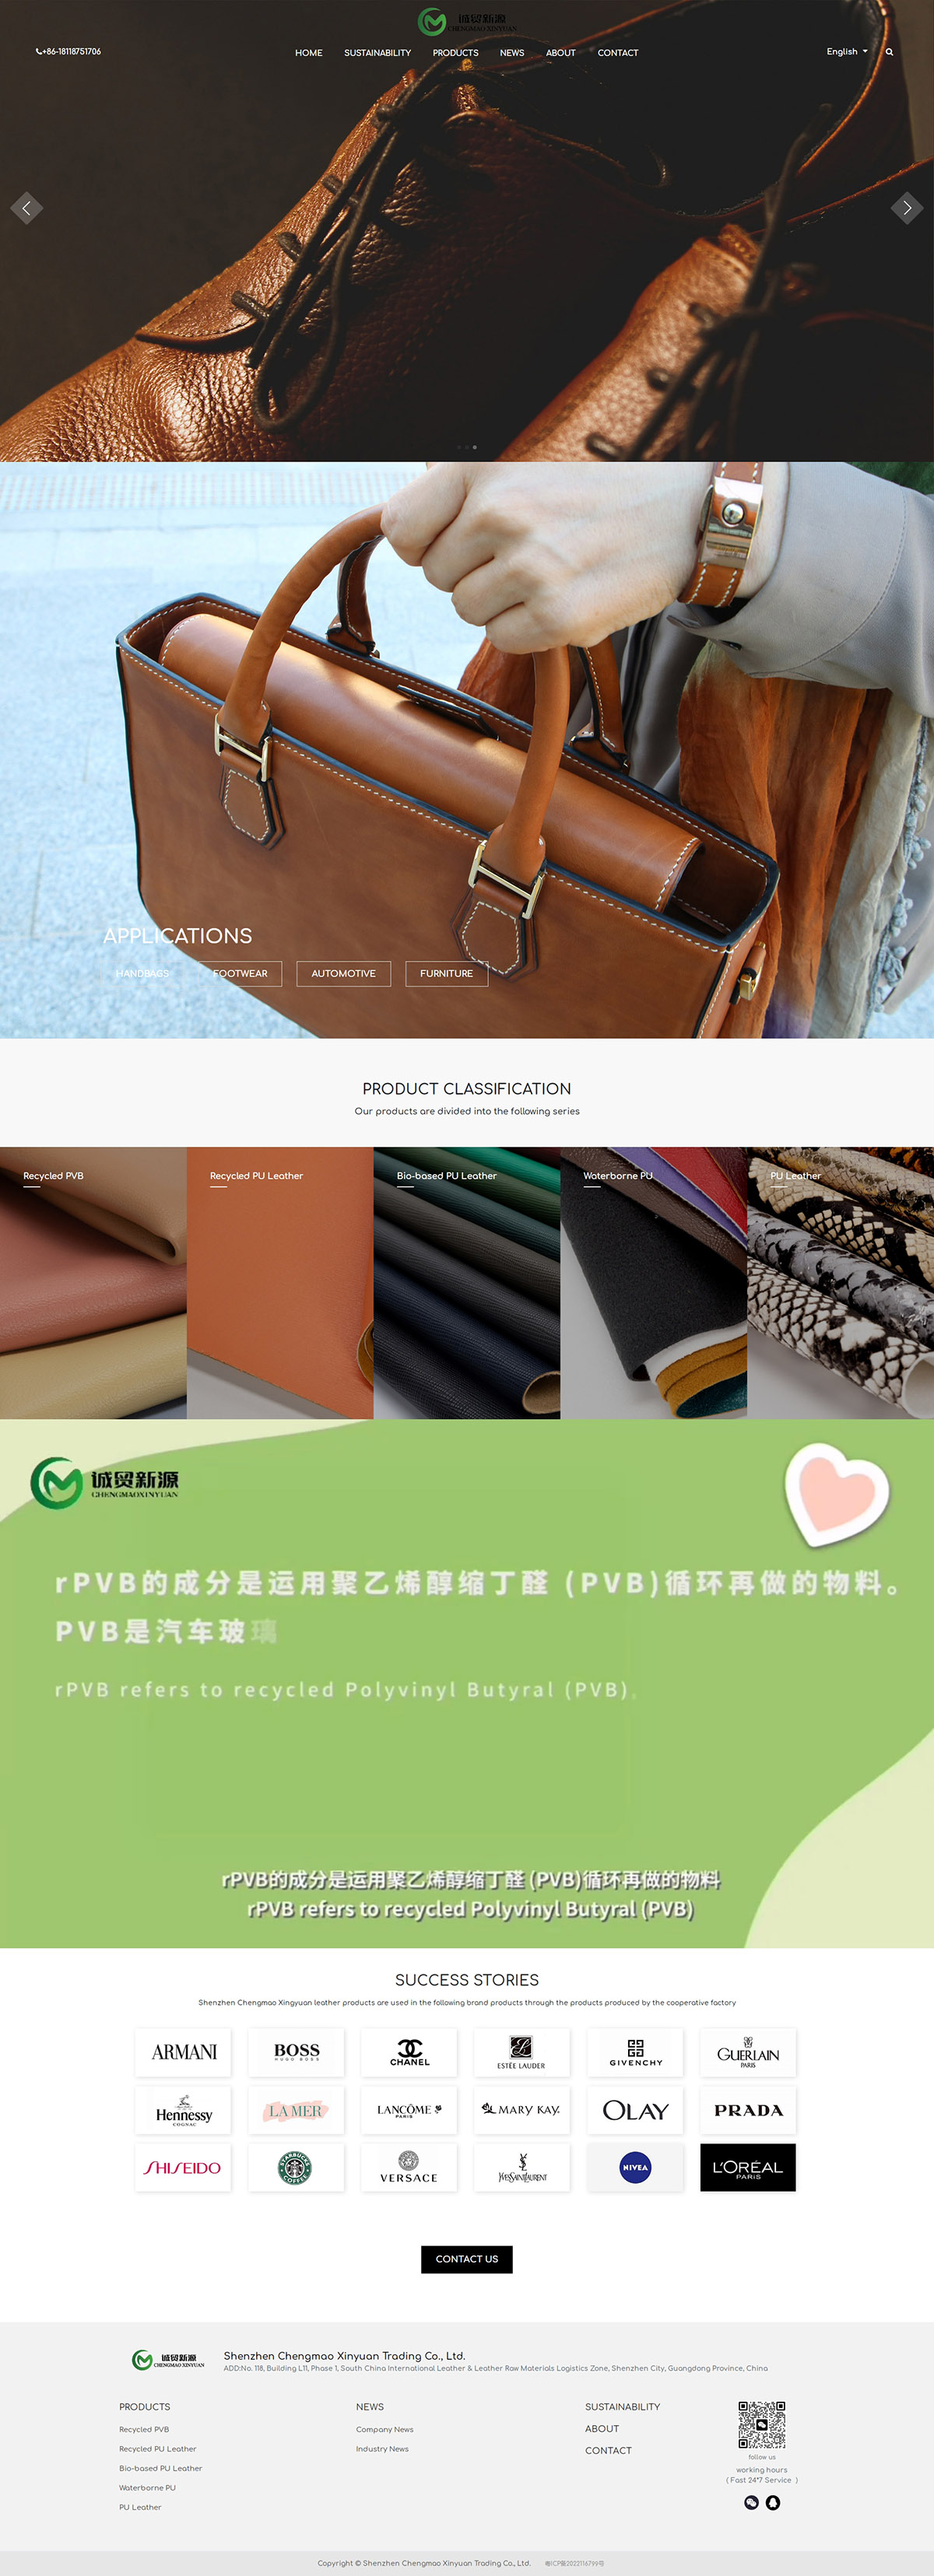 Shenzhen Chengmao Xinyuan Trading Co., Ltd.